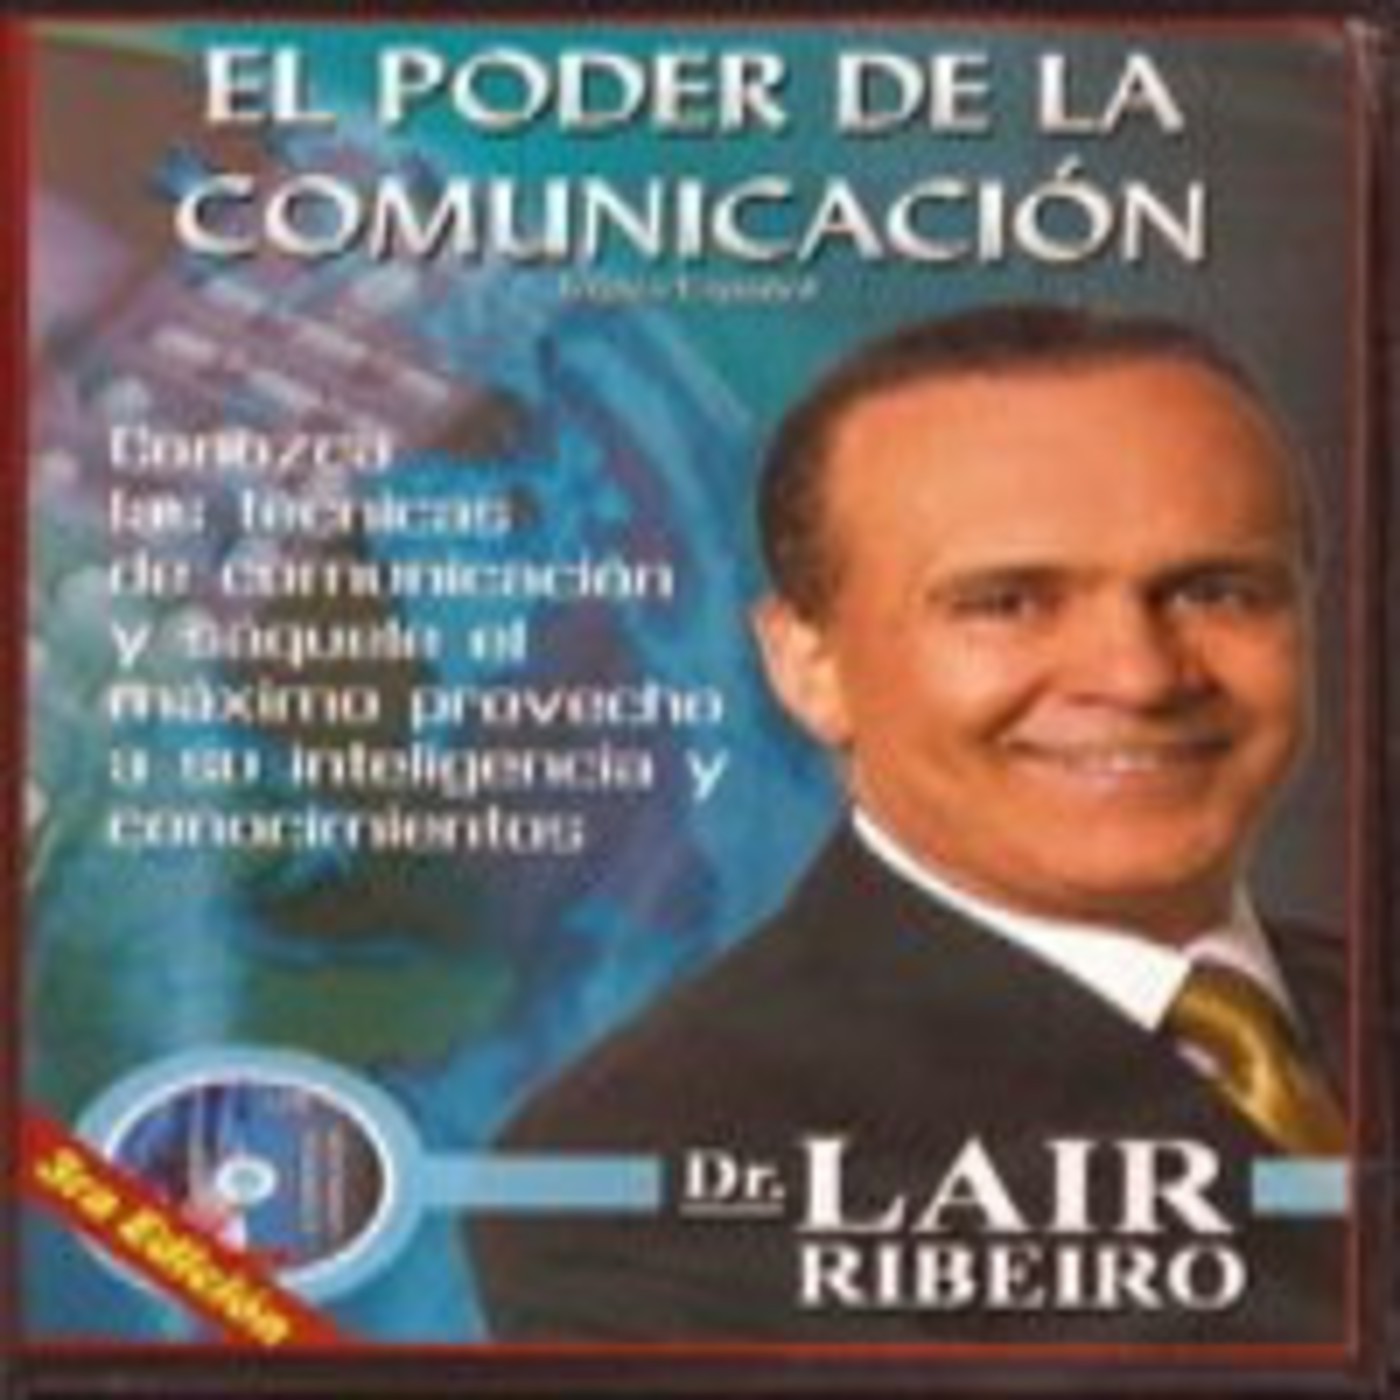 El Poder de la Comunicación (Lair Ribeiro)